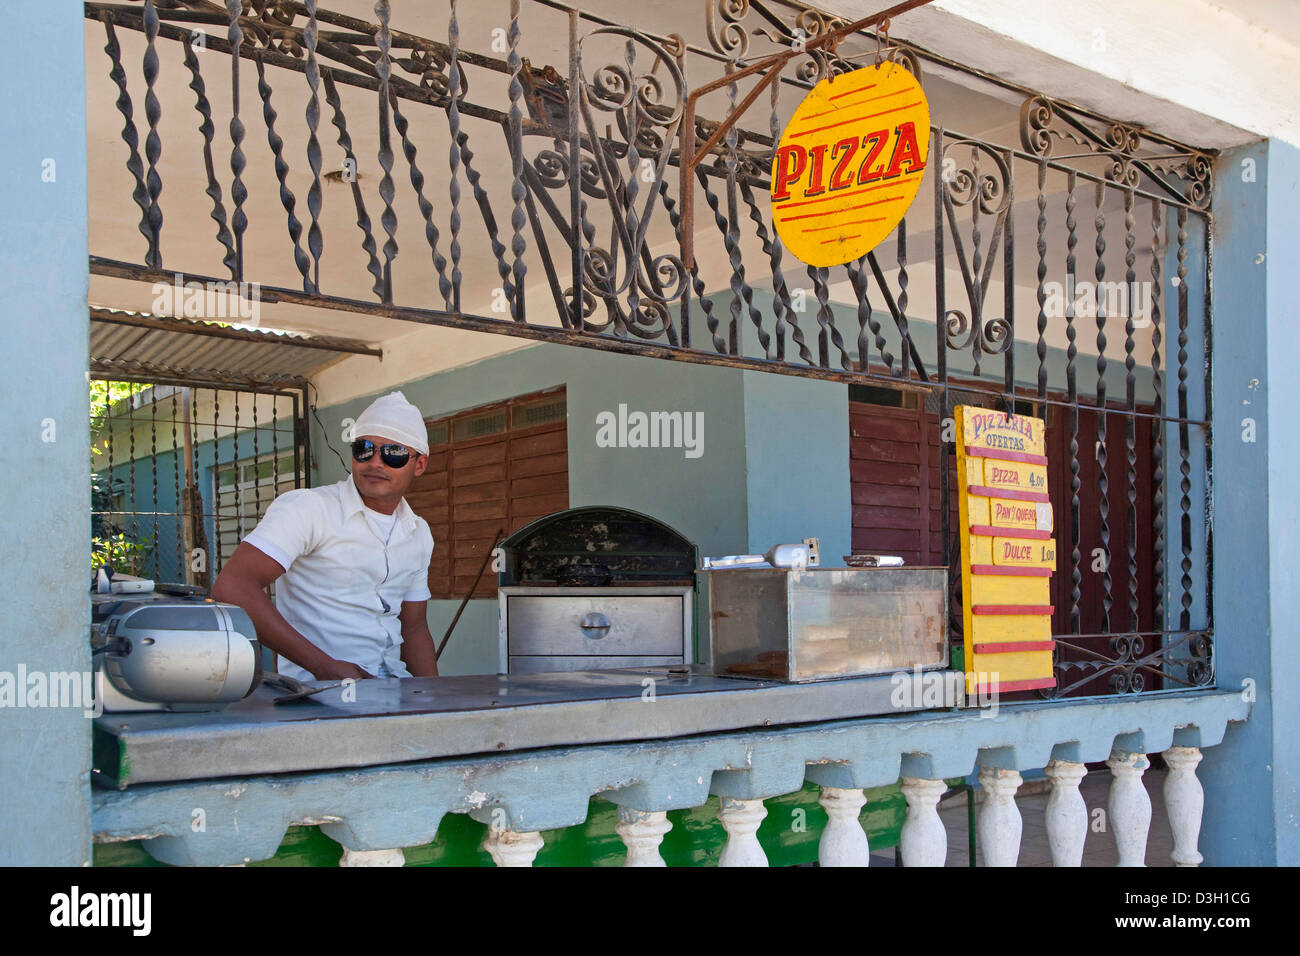 Pizzeria selling peso pizza in Niquero, Cuba, Caribbean Stock Photo